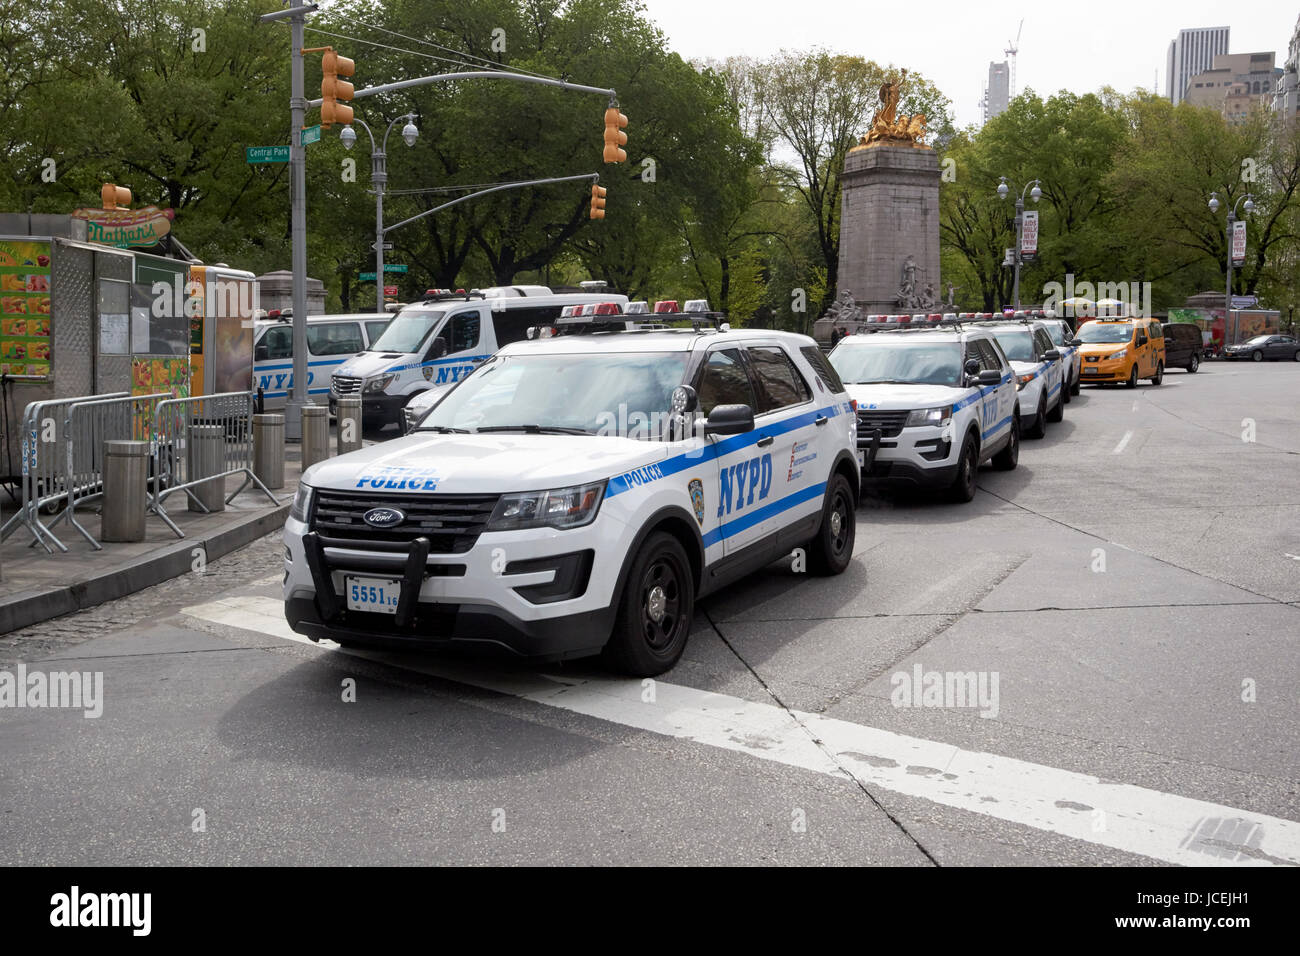 Les véhicules de patrouille de la police de nypd stationné à Columbus Circle New York USA Banque D'Images